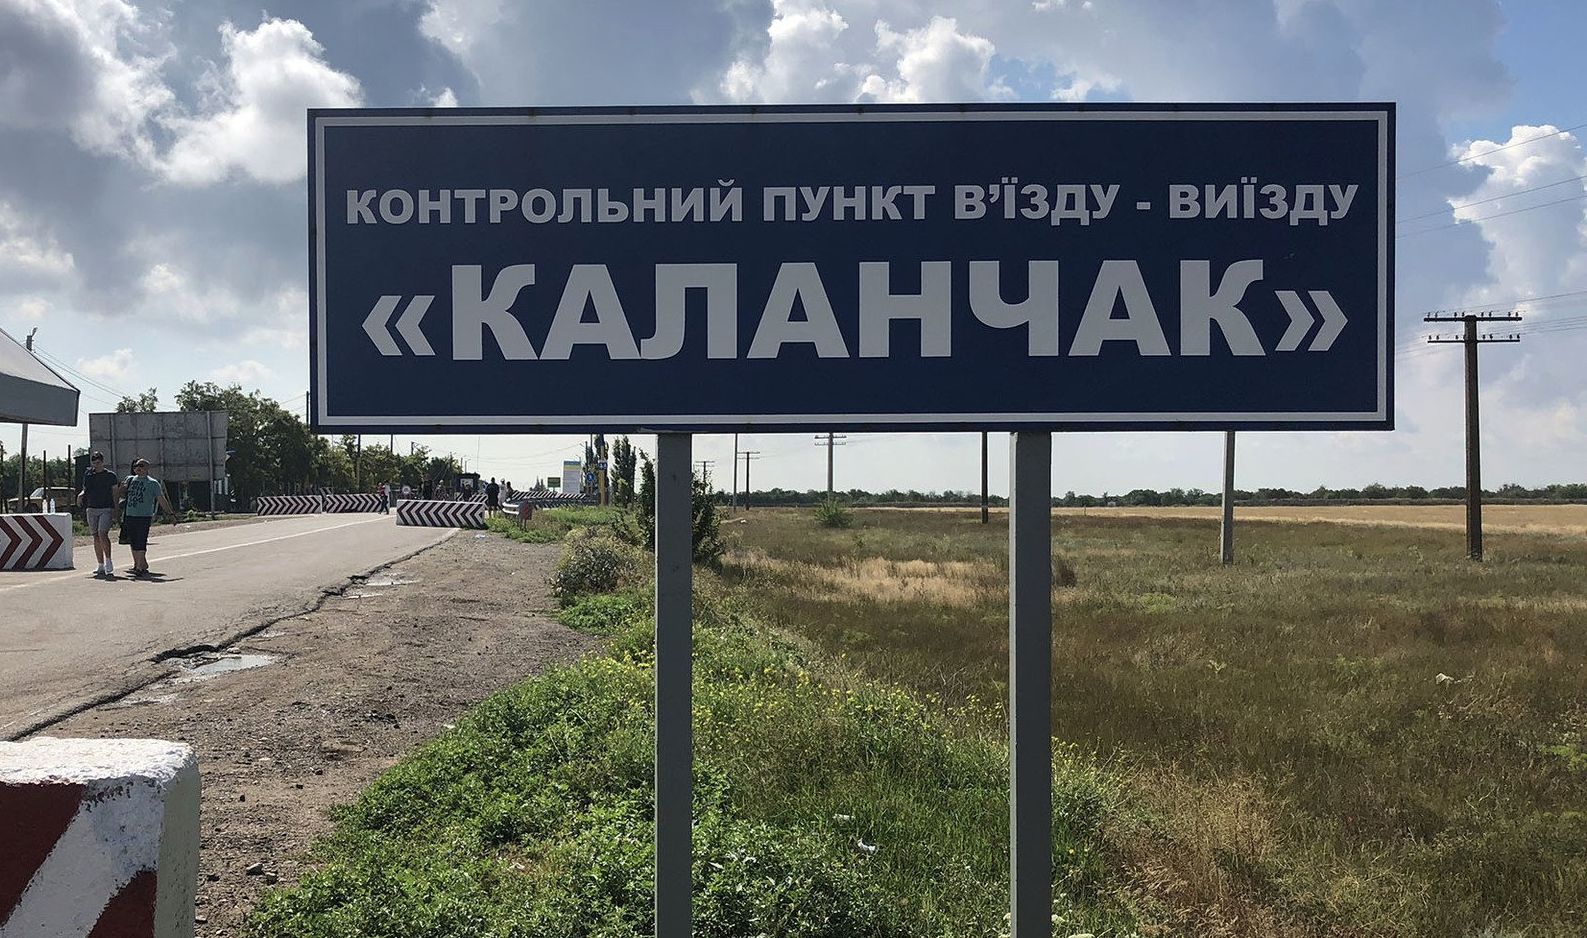 Названо число пересечений админграницы с Крымом